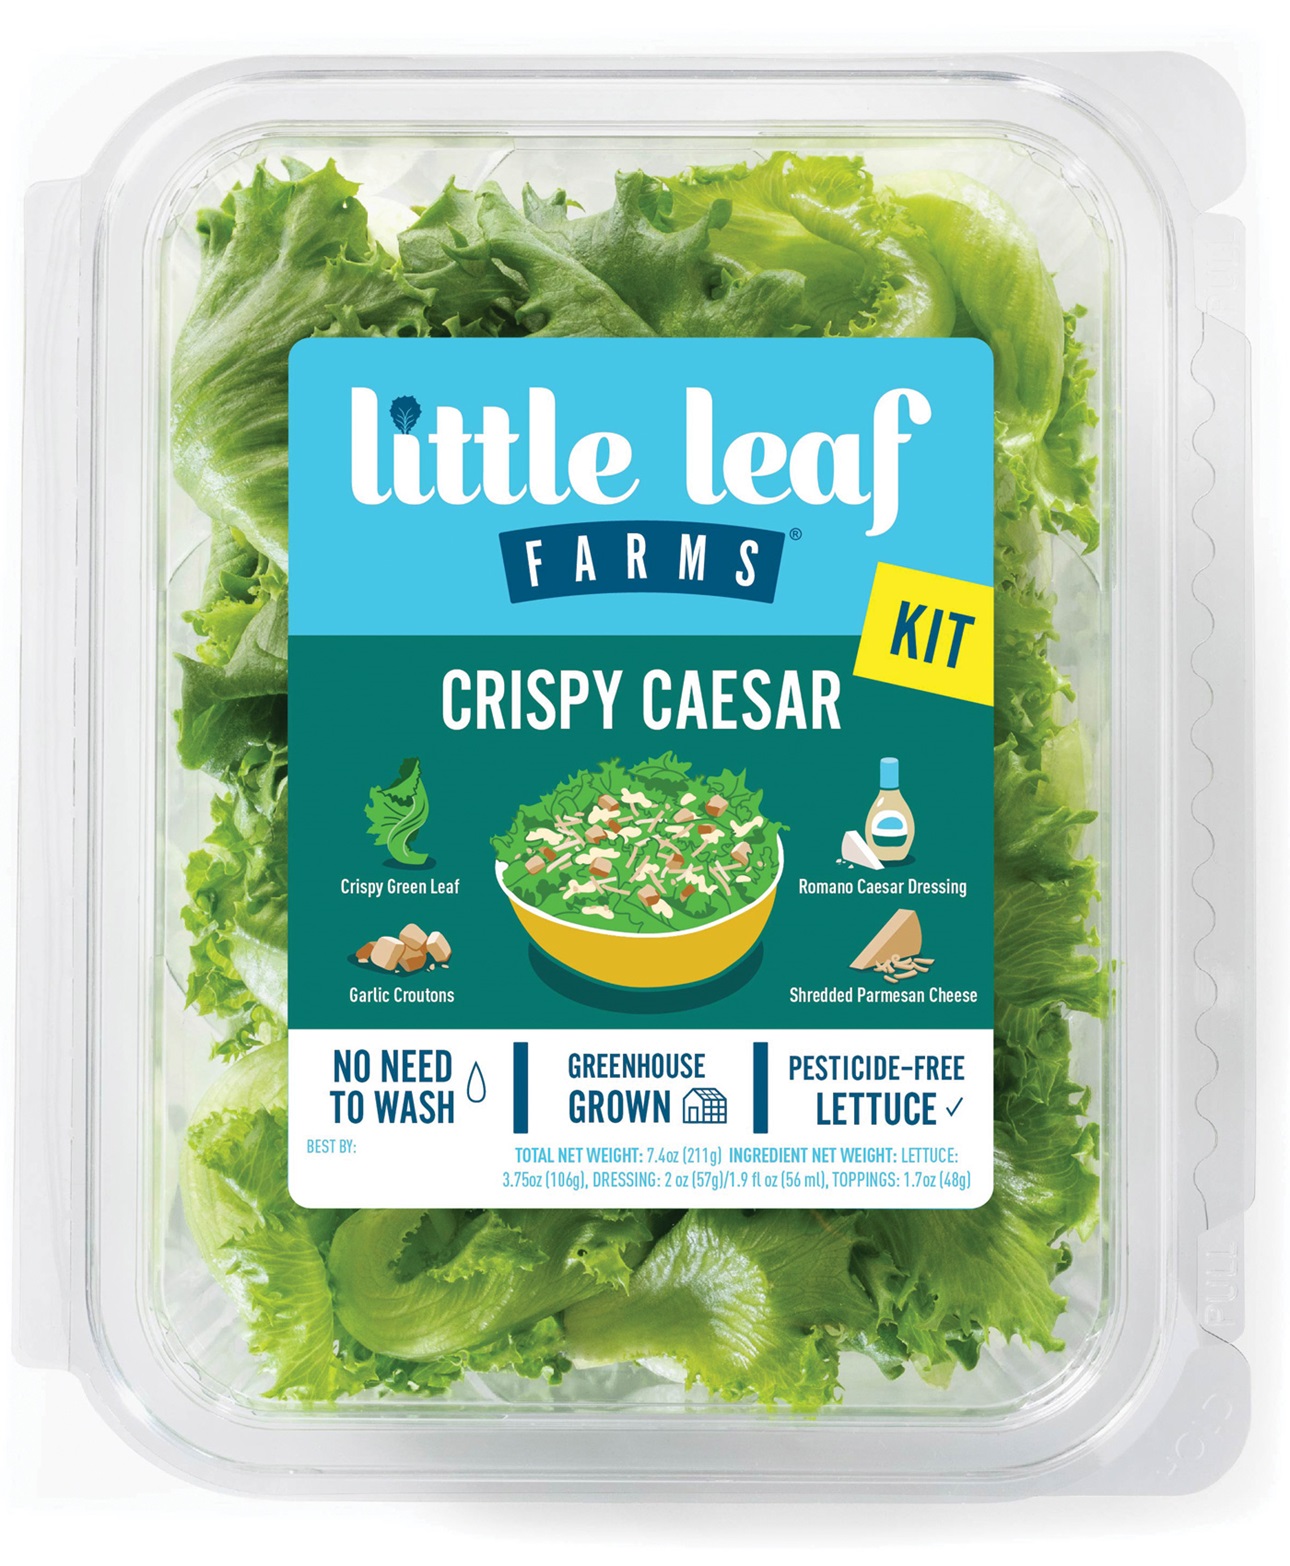 Little Leaf Farms Crispy Caesar salad kit